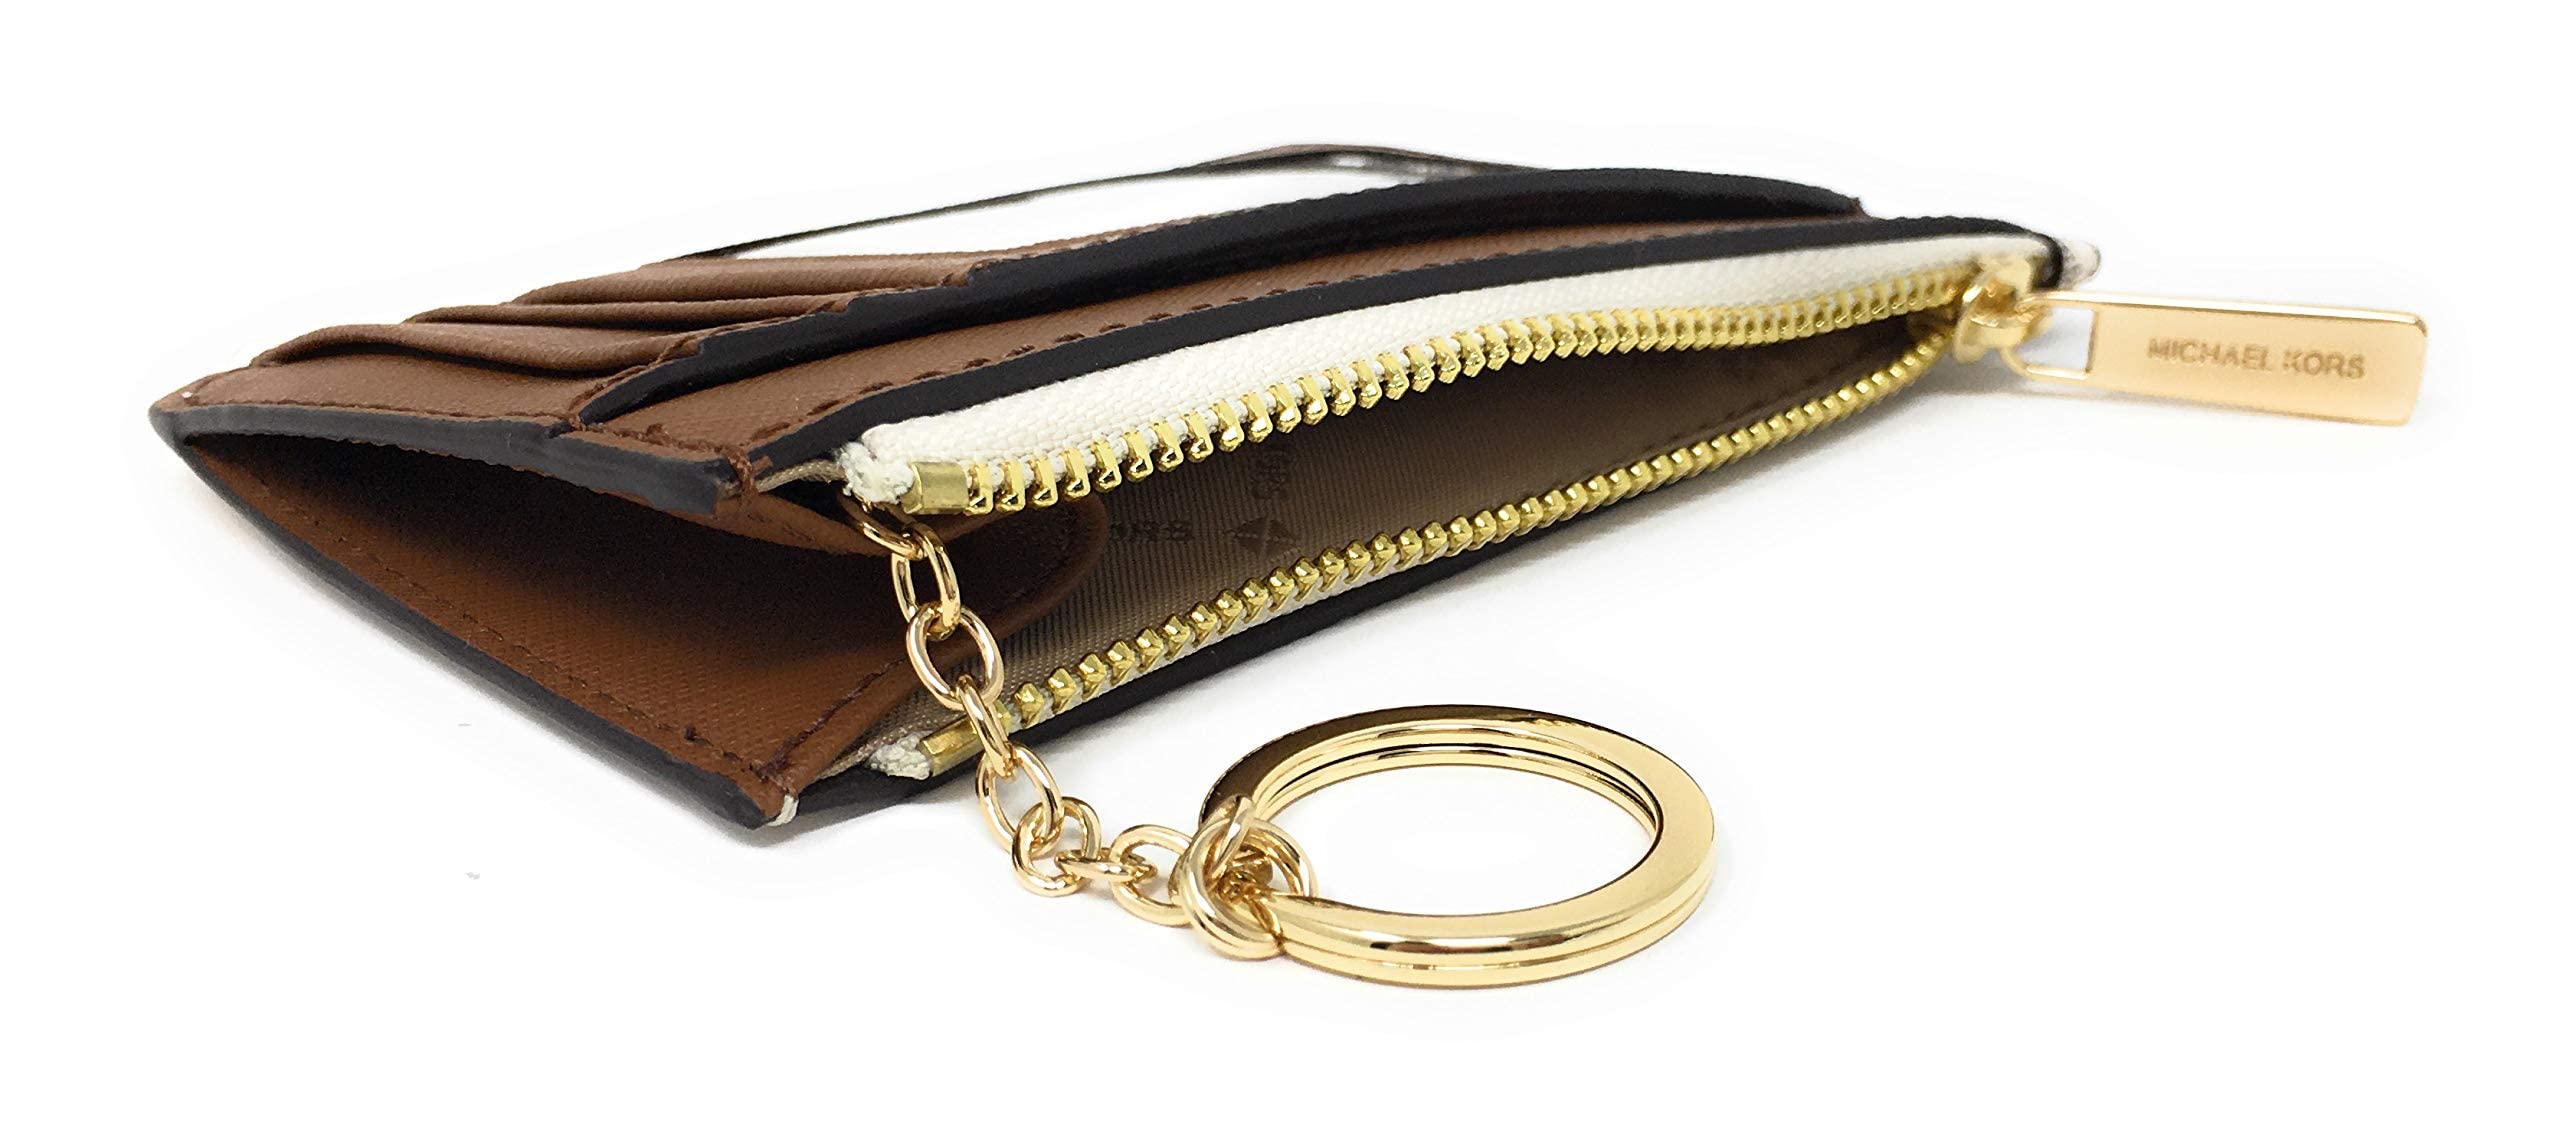 Michael Kors Women's Slim Wallet, Vanilla, One Size